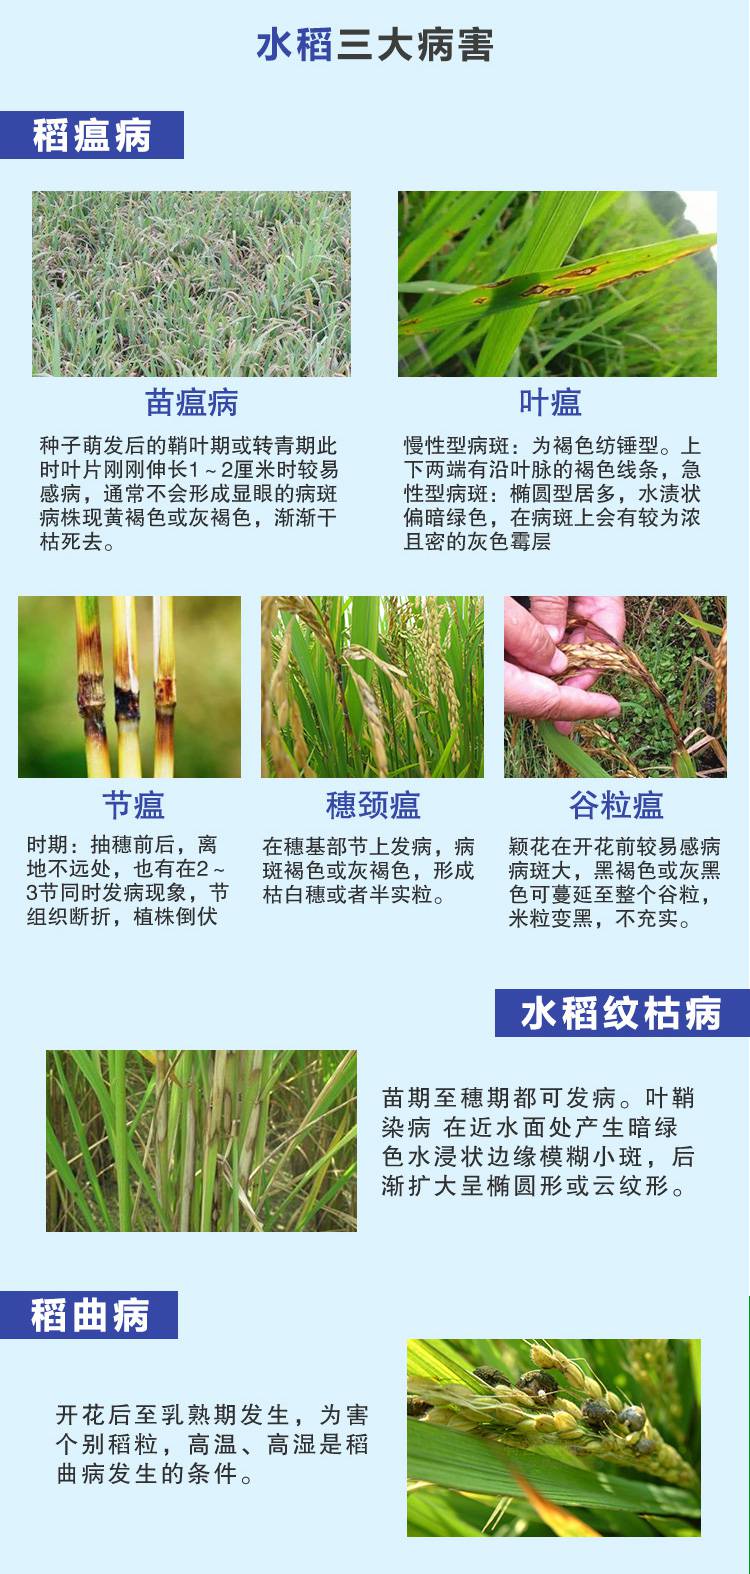 农药杀菌剂展开有效成分稻瘟灵己唑醇用途水稻稻曲病纹枯病稻瘟病